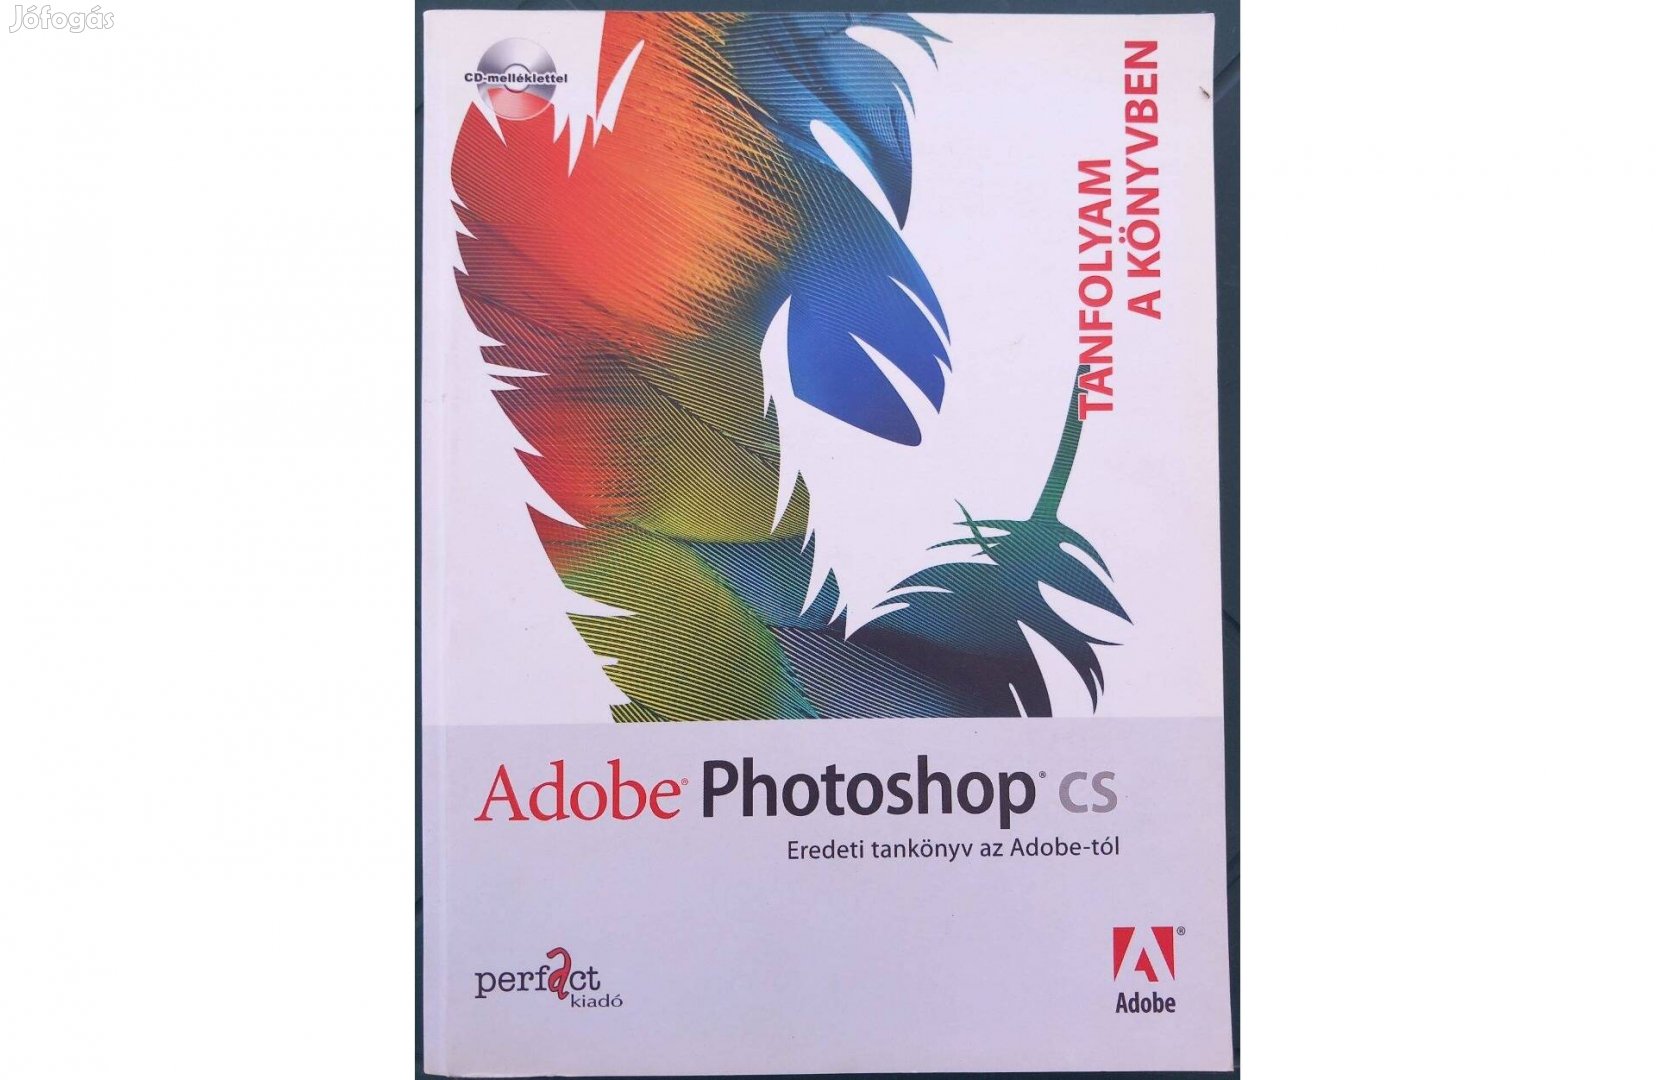 Adobe Photoshop CS - Eredeti tankönyv az Adobe-tól